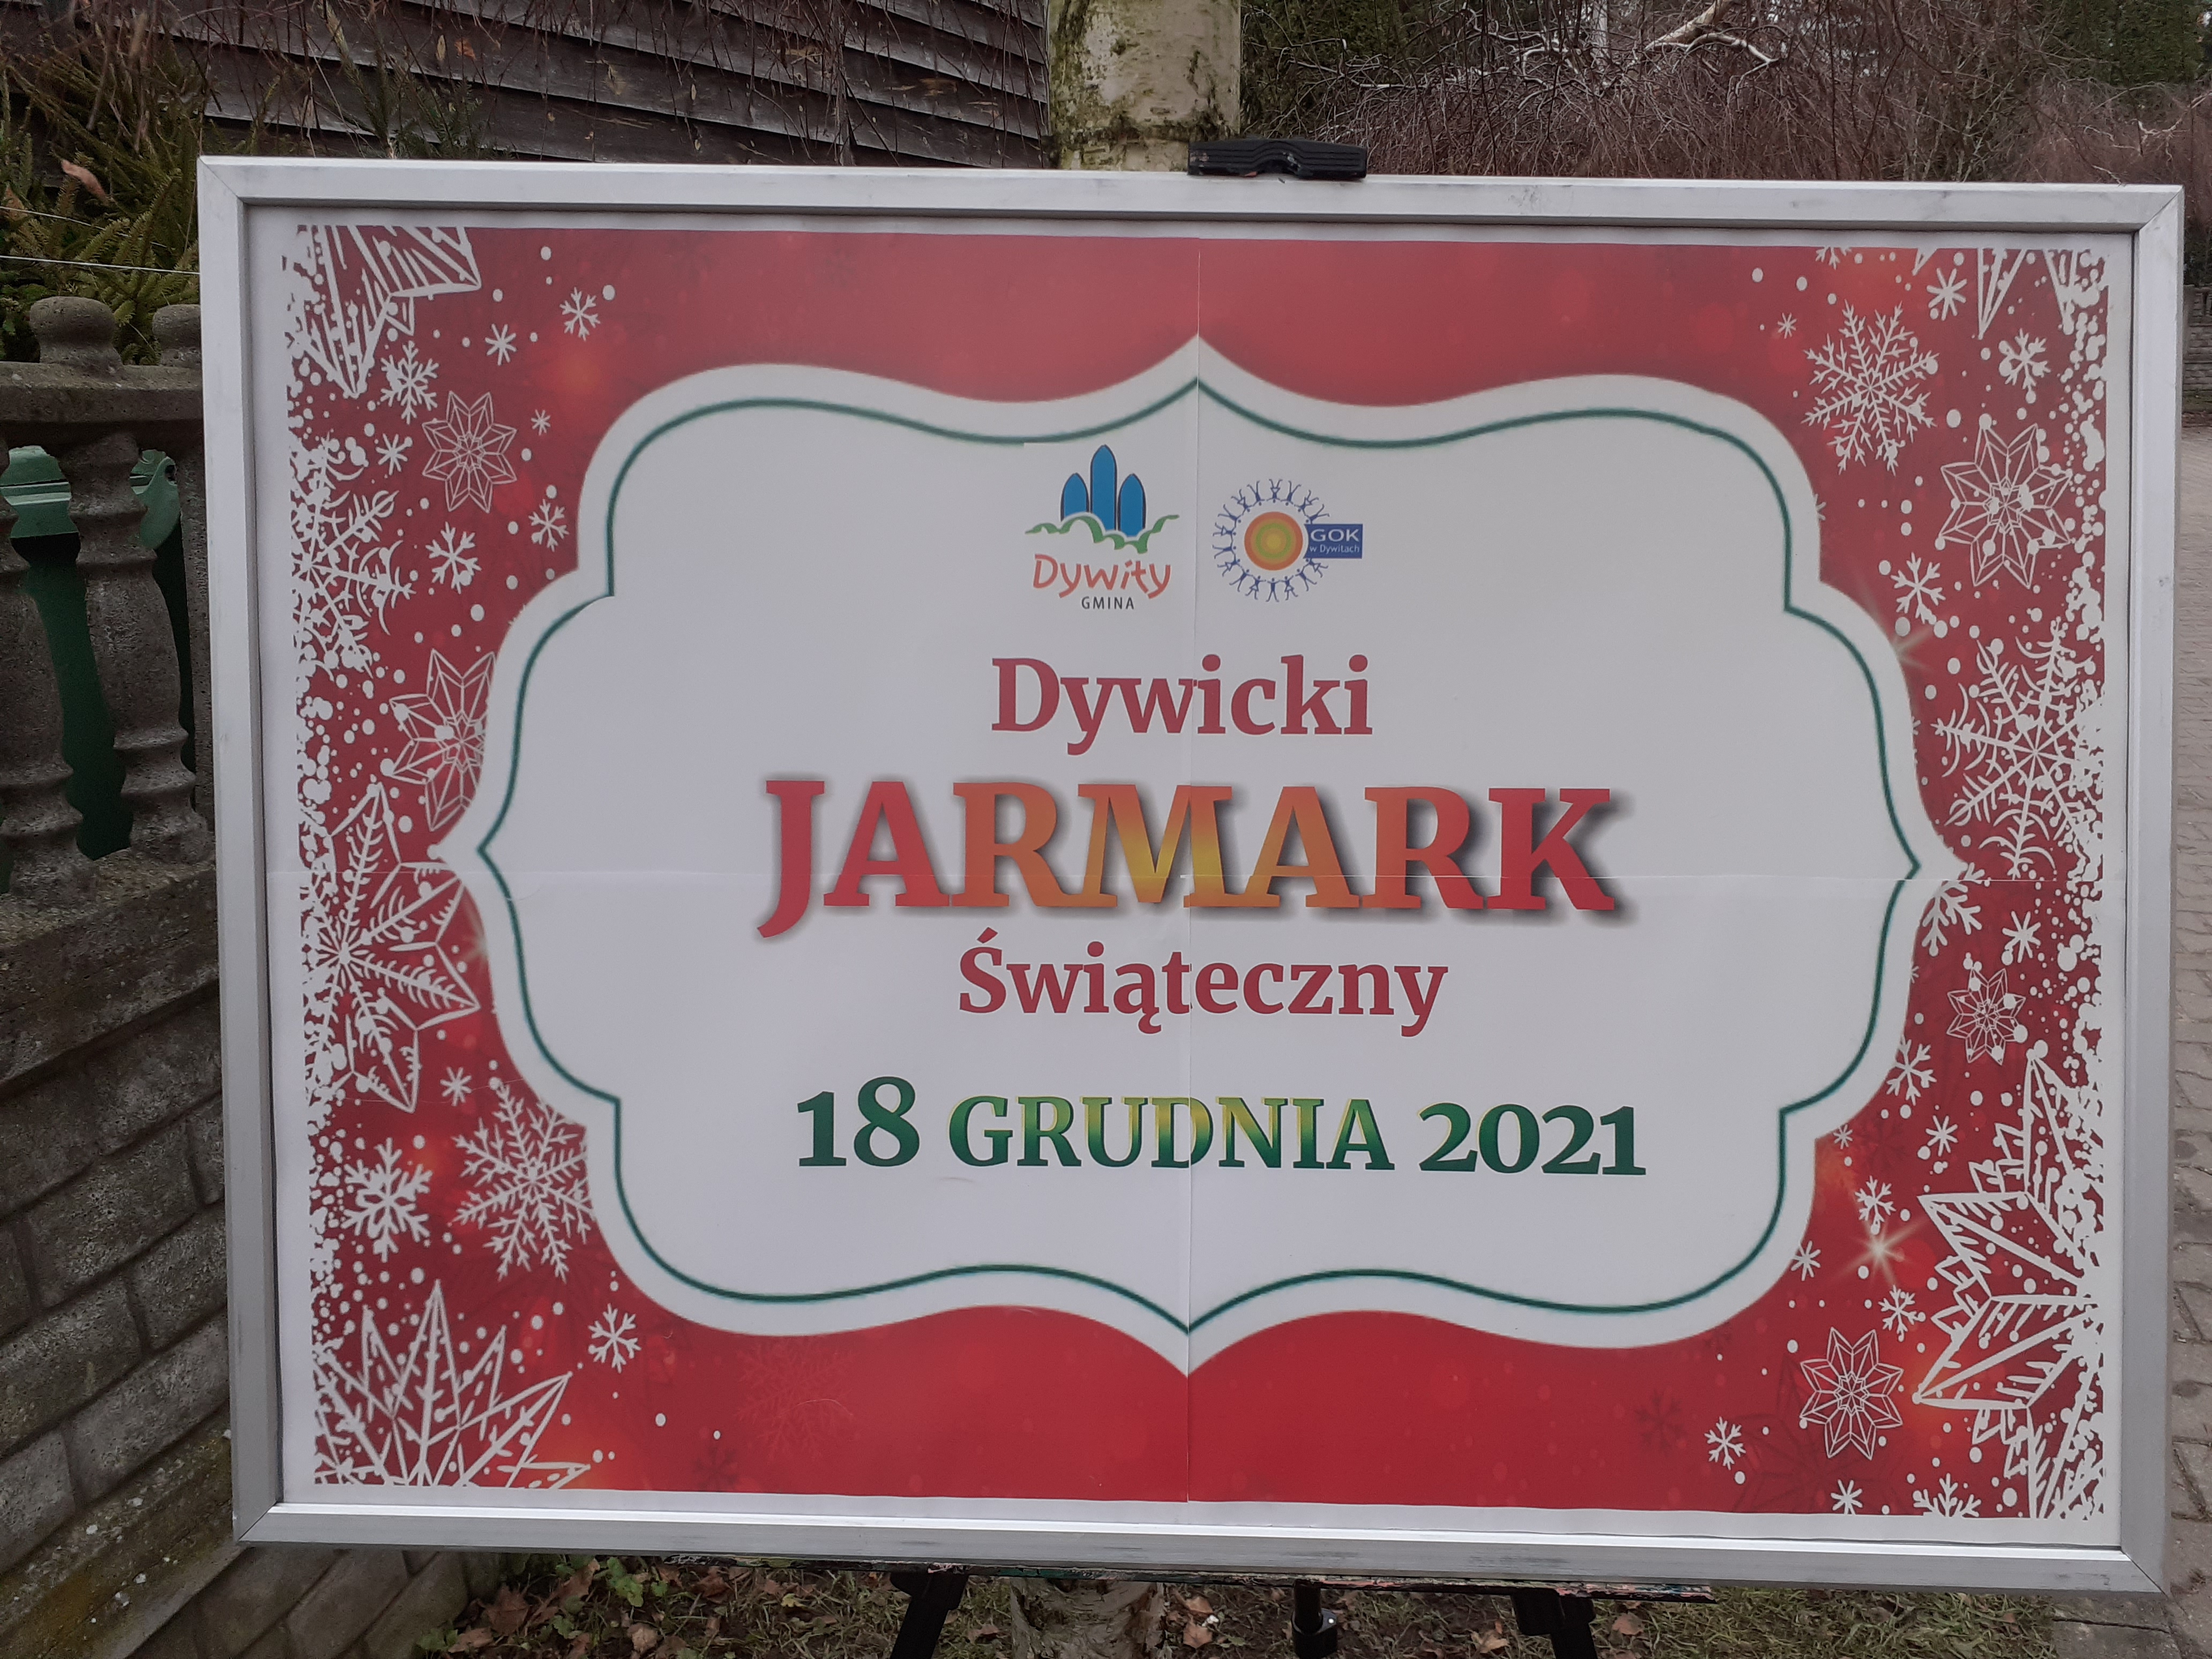 "Dywicki JARMARK Świąteczny”